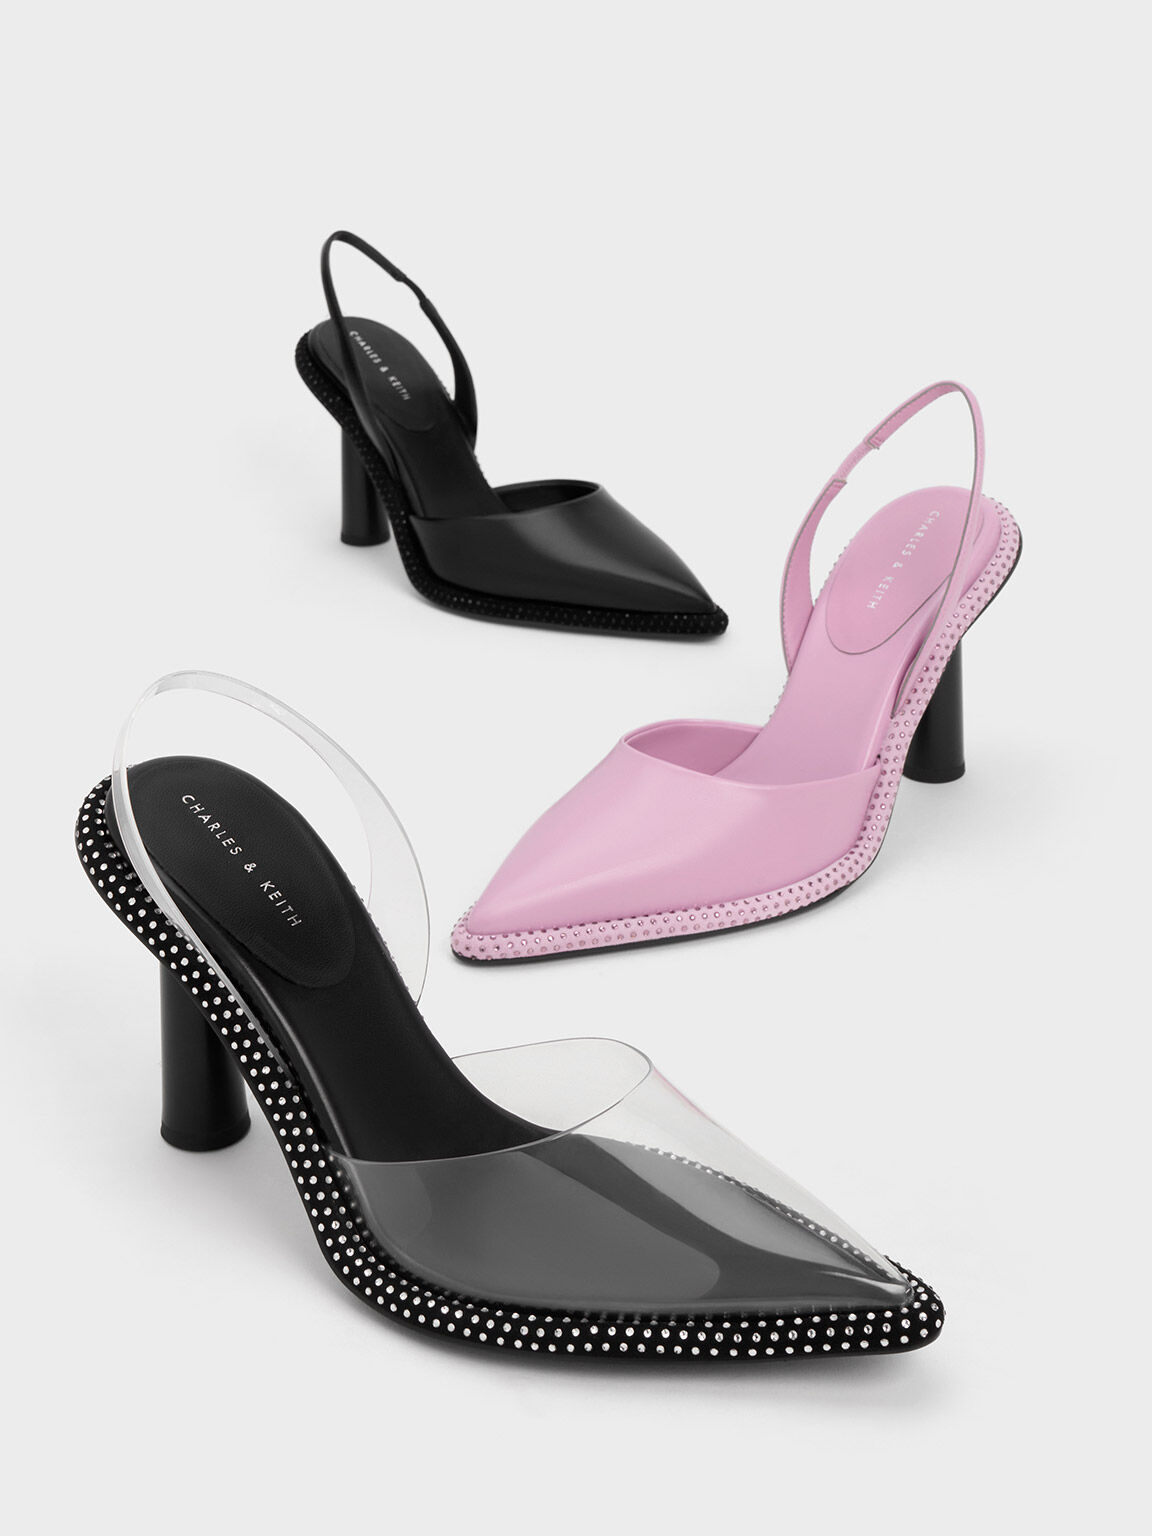 Zara Vinyl Sandals in Black | Trendy Heeled Mules